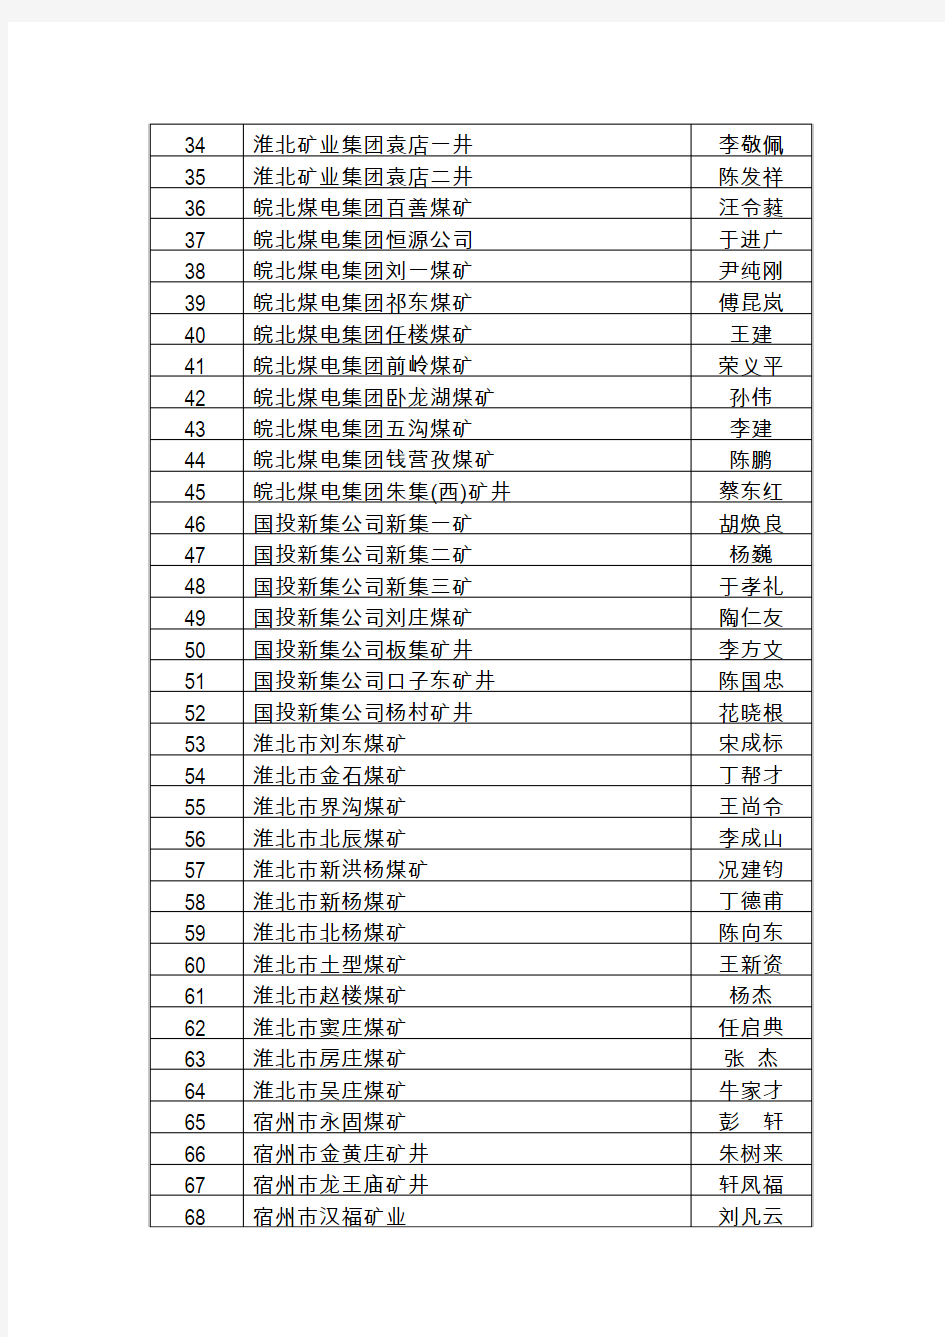 安徽省《七条规定》承诺书签订名单